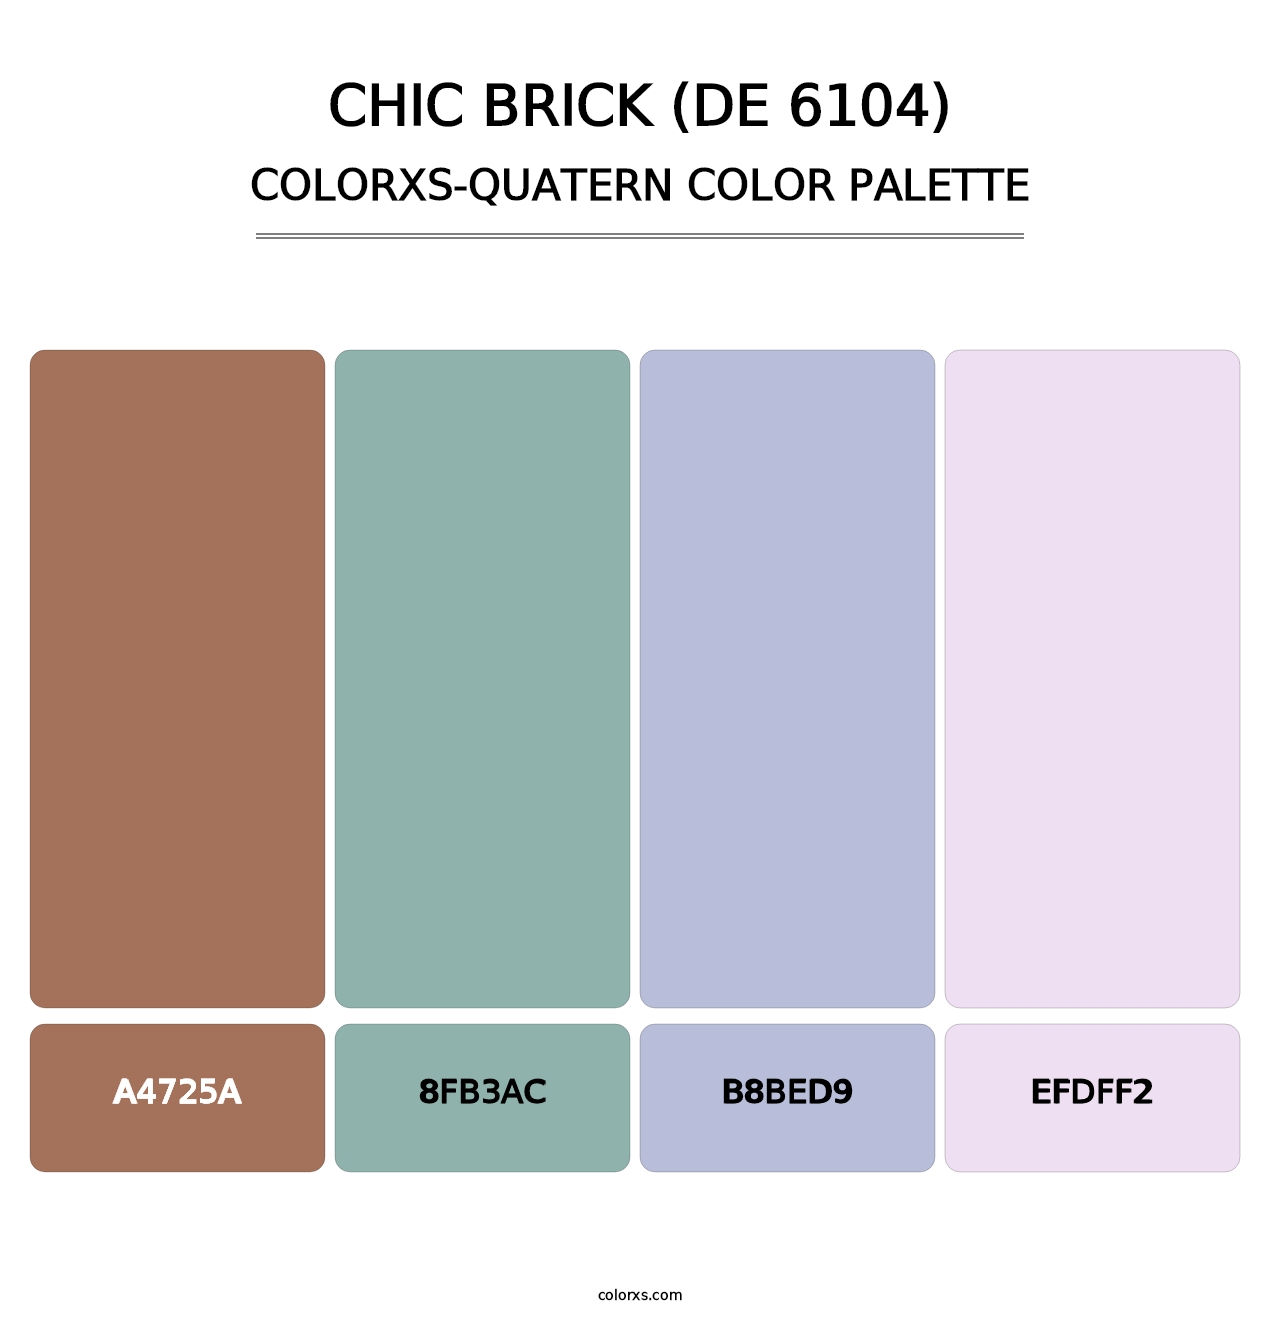 Chic Brick (DE 6104) - Colorxs Quatern Palette